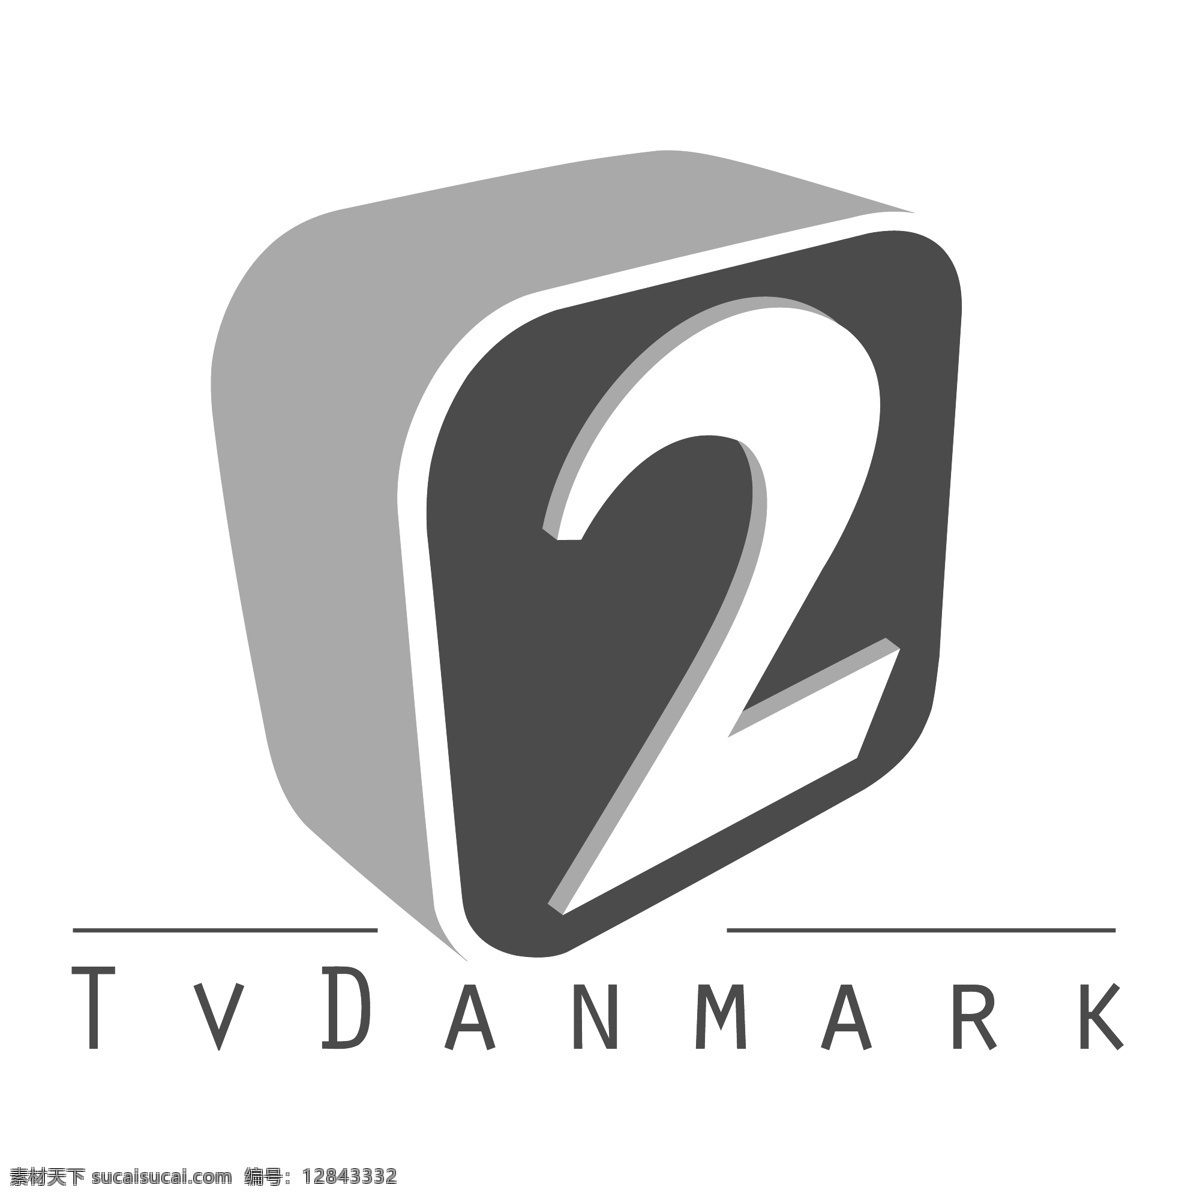 电视公司2 丹麦 电视 免费 矢量图 矢量 免费电视向量 向量的电视 免费载体 电视画面 电视自由载体 建筑家居